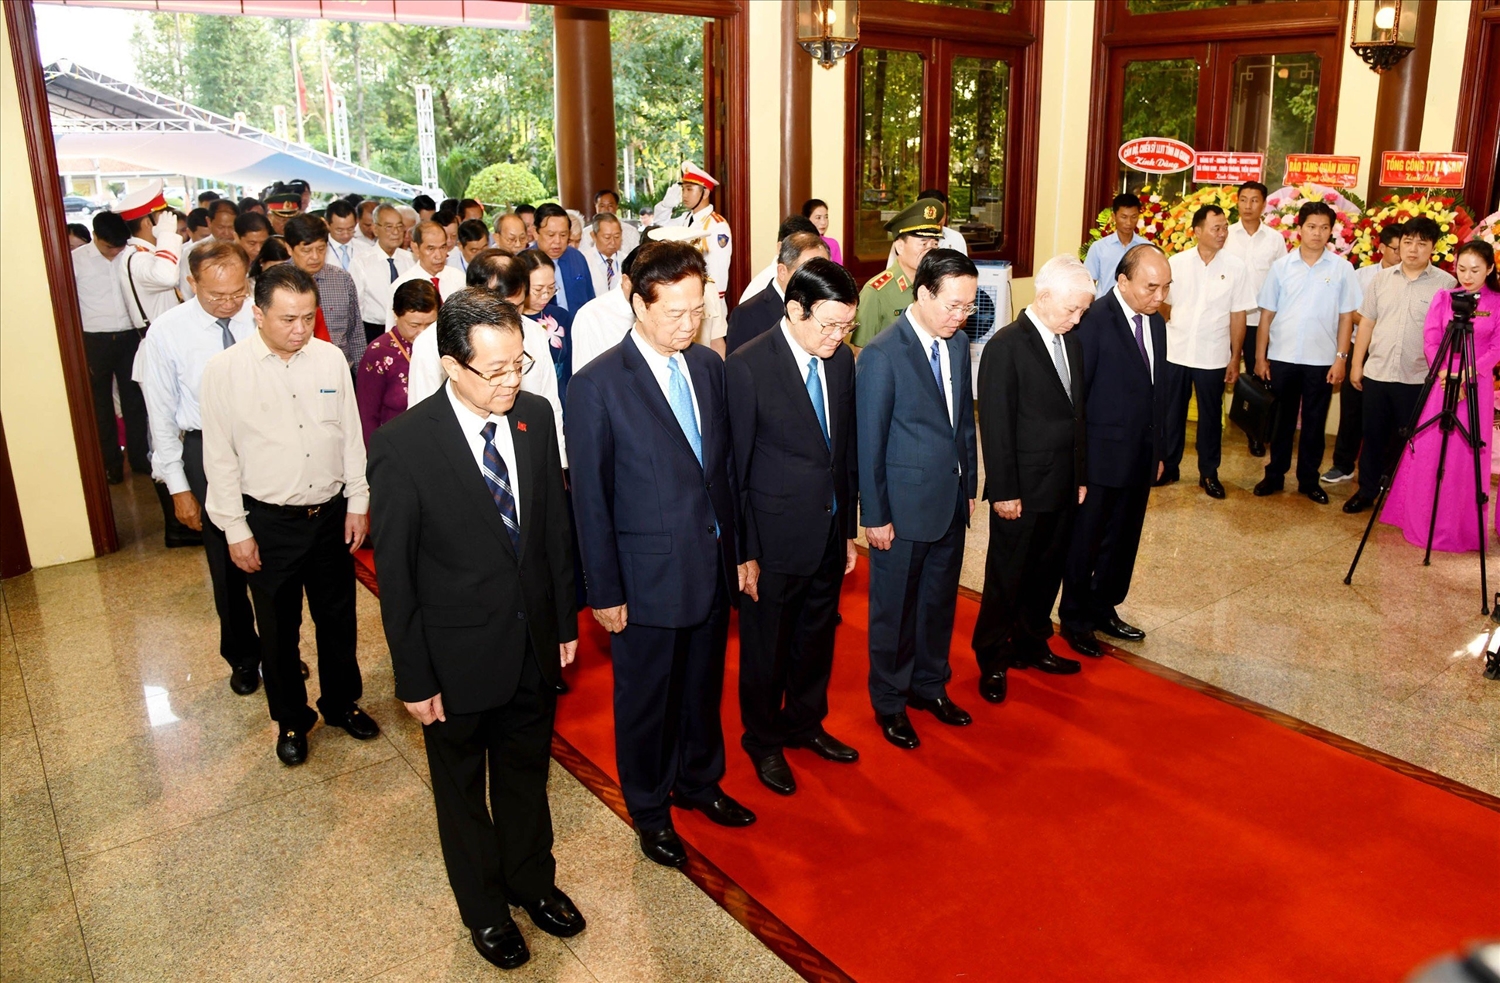 Chủ tịch nước Võ Văn Thưởng và các lãnh đạo, nguyên lãnh đạo Đảng, Nhà nước đã thành kính dành phút mặc niệm tưởng nhớ Chủ tịch Tôn Đức Thắng